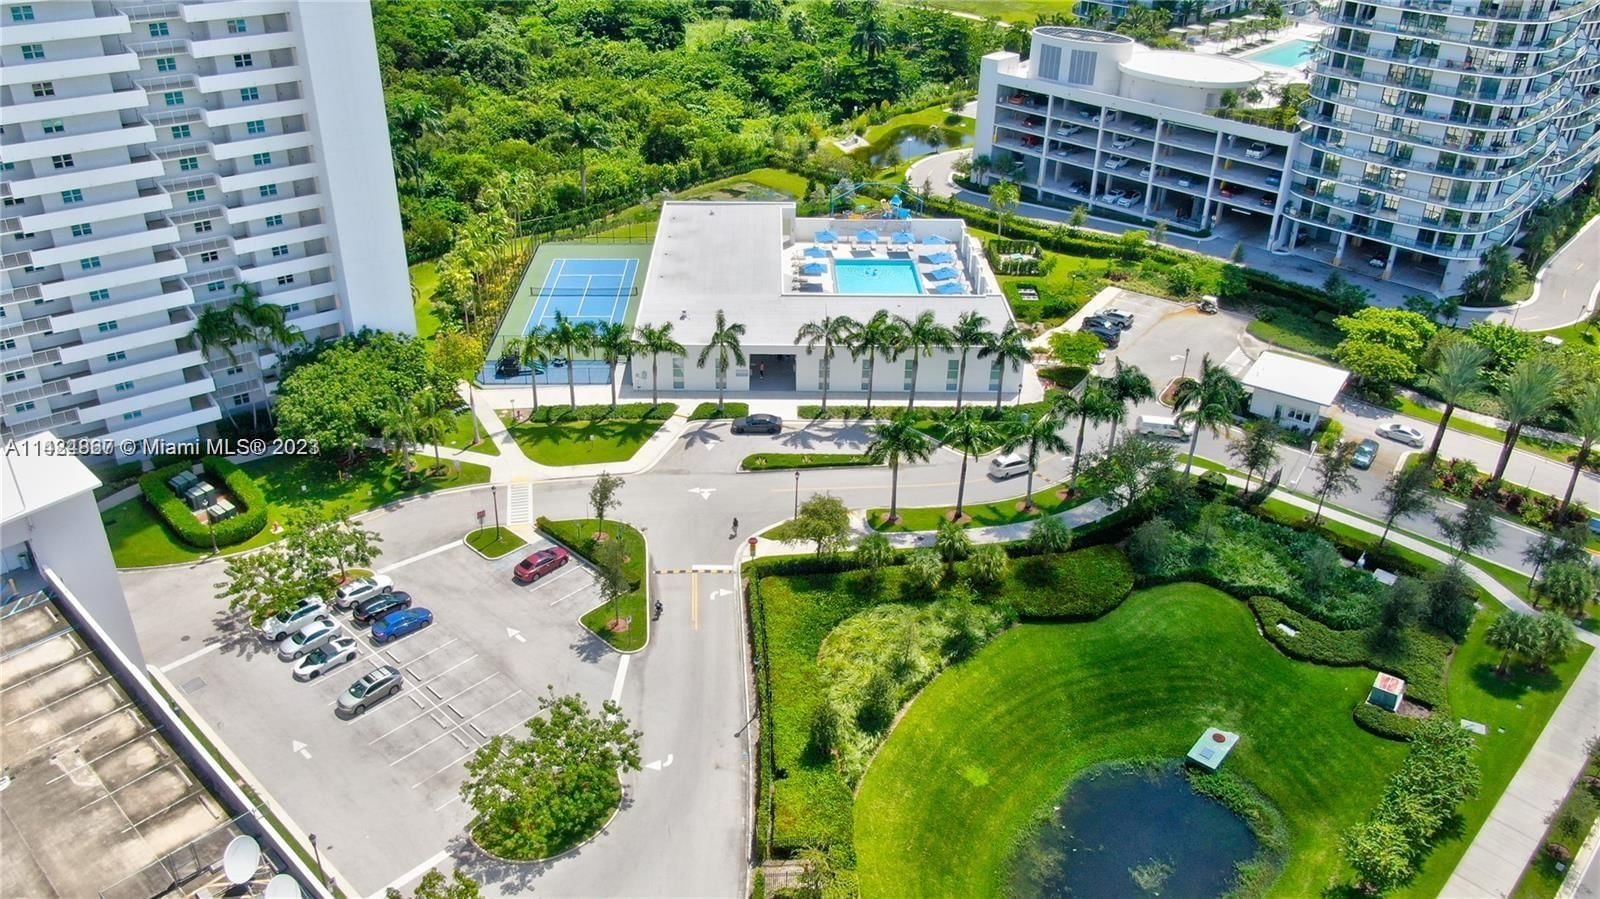 Real estate property located at 15051 Royal Oaks Ln #503, Miami-Dade County, THE OAKS I CONDO, North Miami, FL